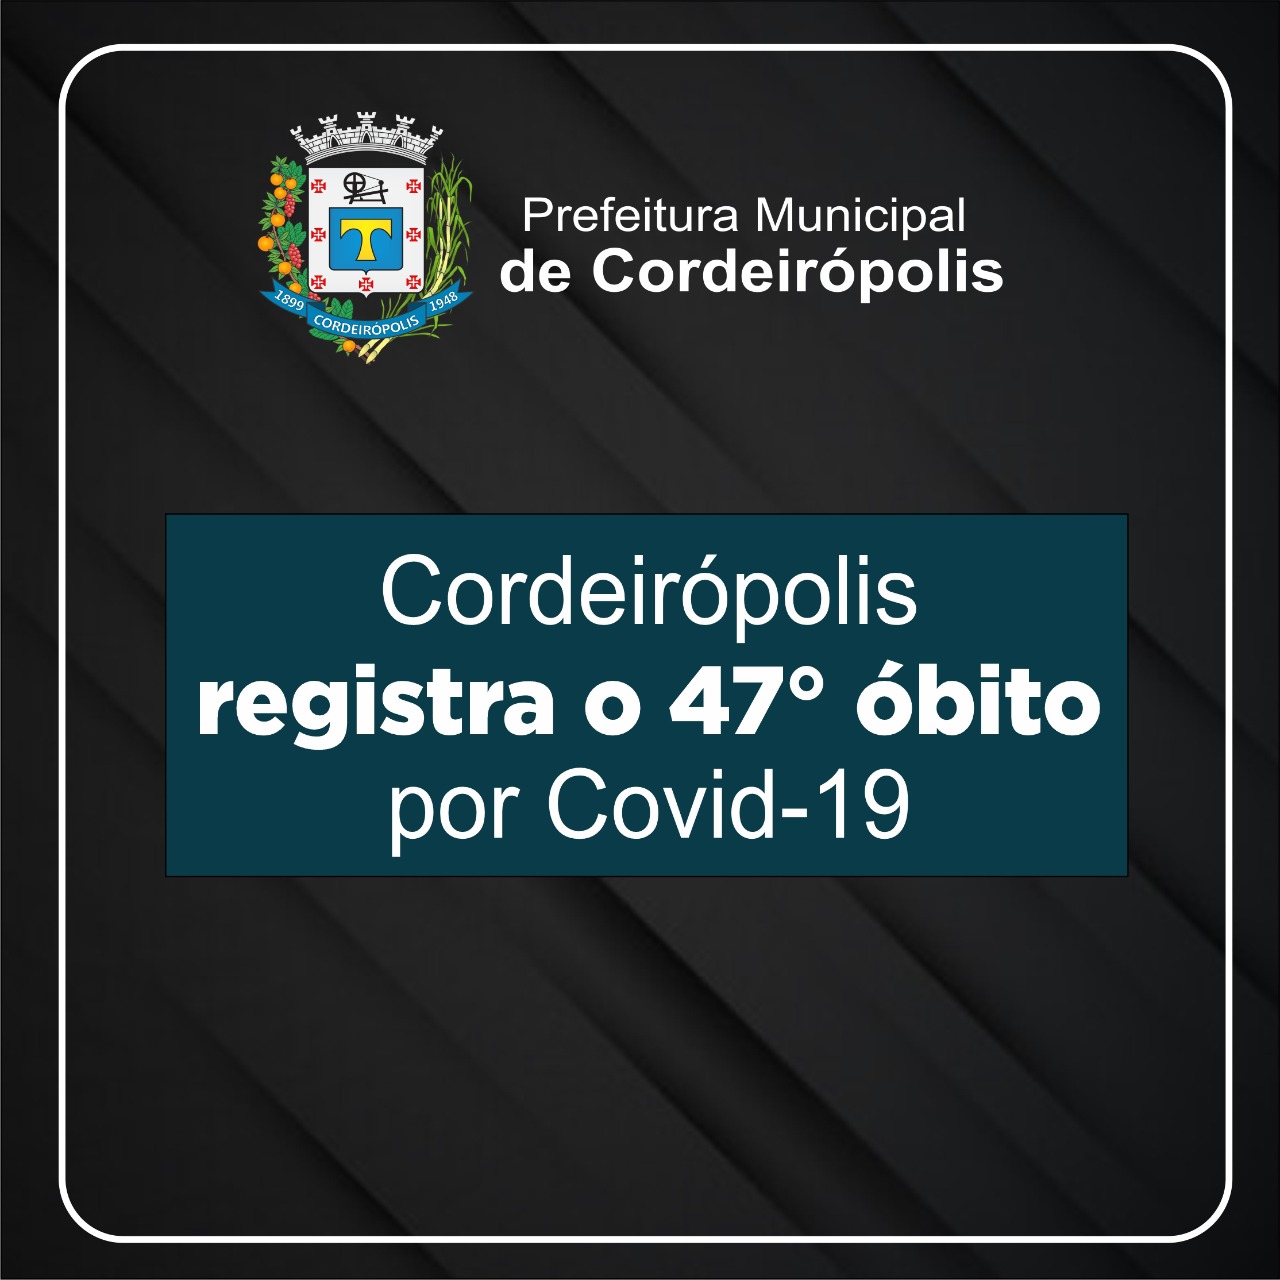 Cordeirópolis chega a 47 mortes por Covid